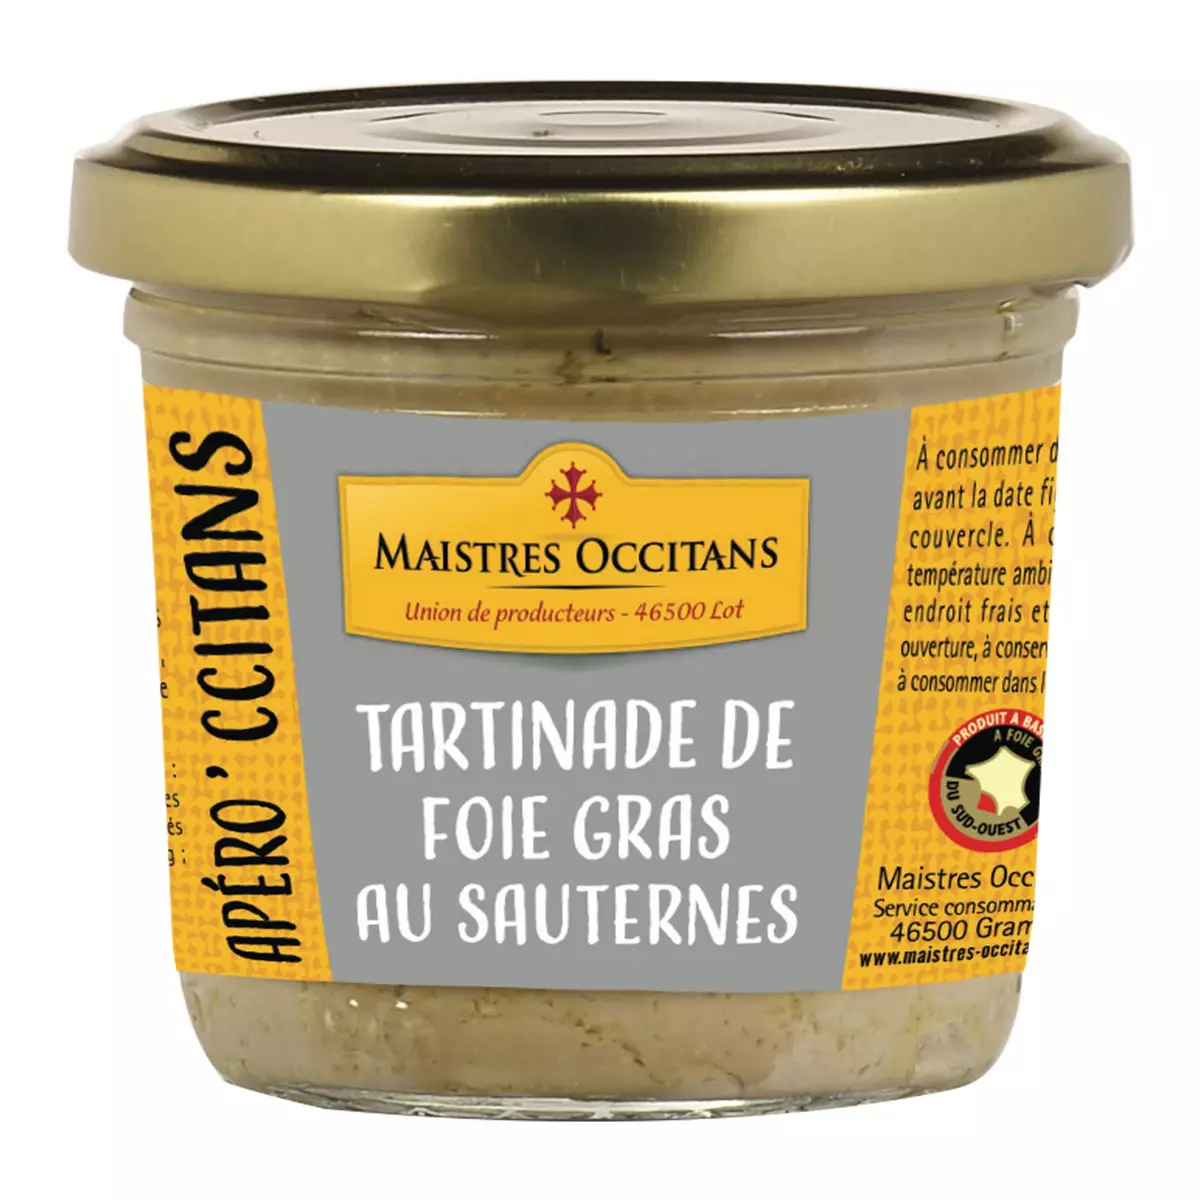 MAISTRES OCCITANS Foie gras de canard Sud-Ouest au Sauternes 90g